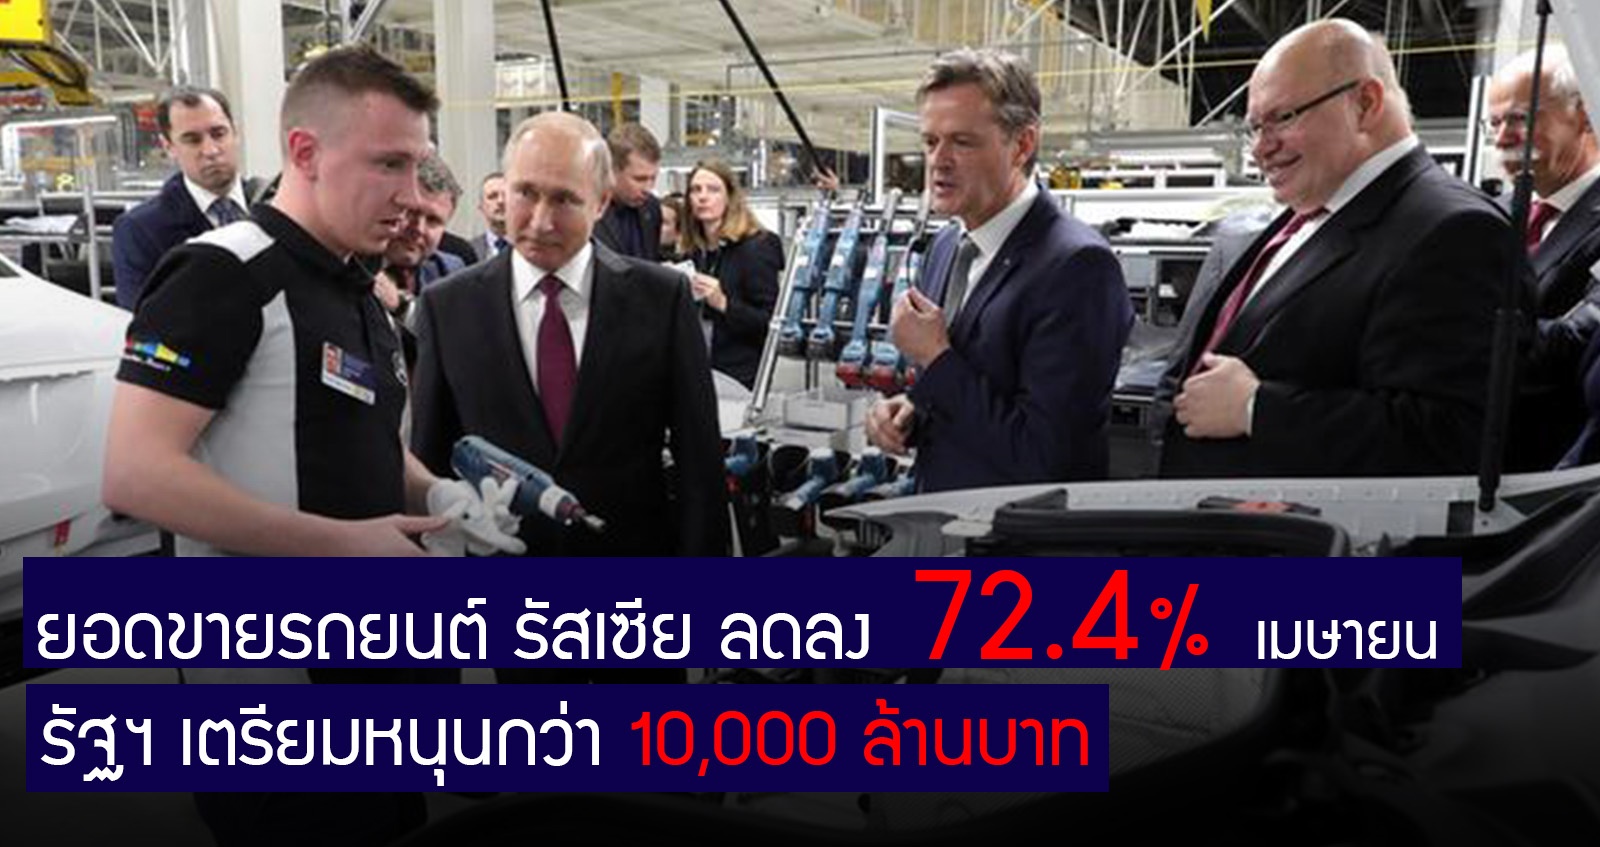 ยอดขายรถยนต์ รัสเซีย ลดลง 72.4% ในเดือนเมษา รัฐฯ เตรียมหนุนกว่า 10,000 ล้านบาท